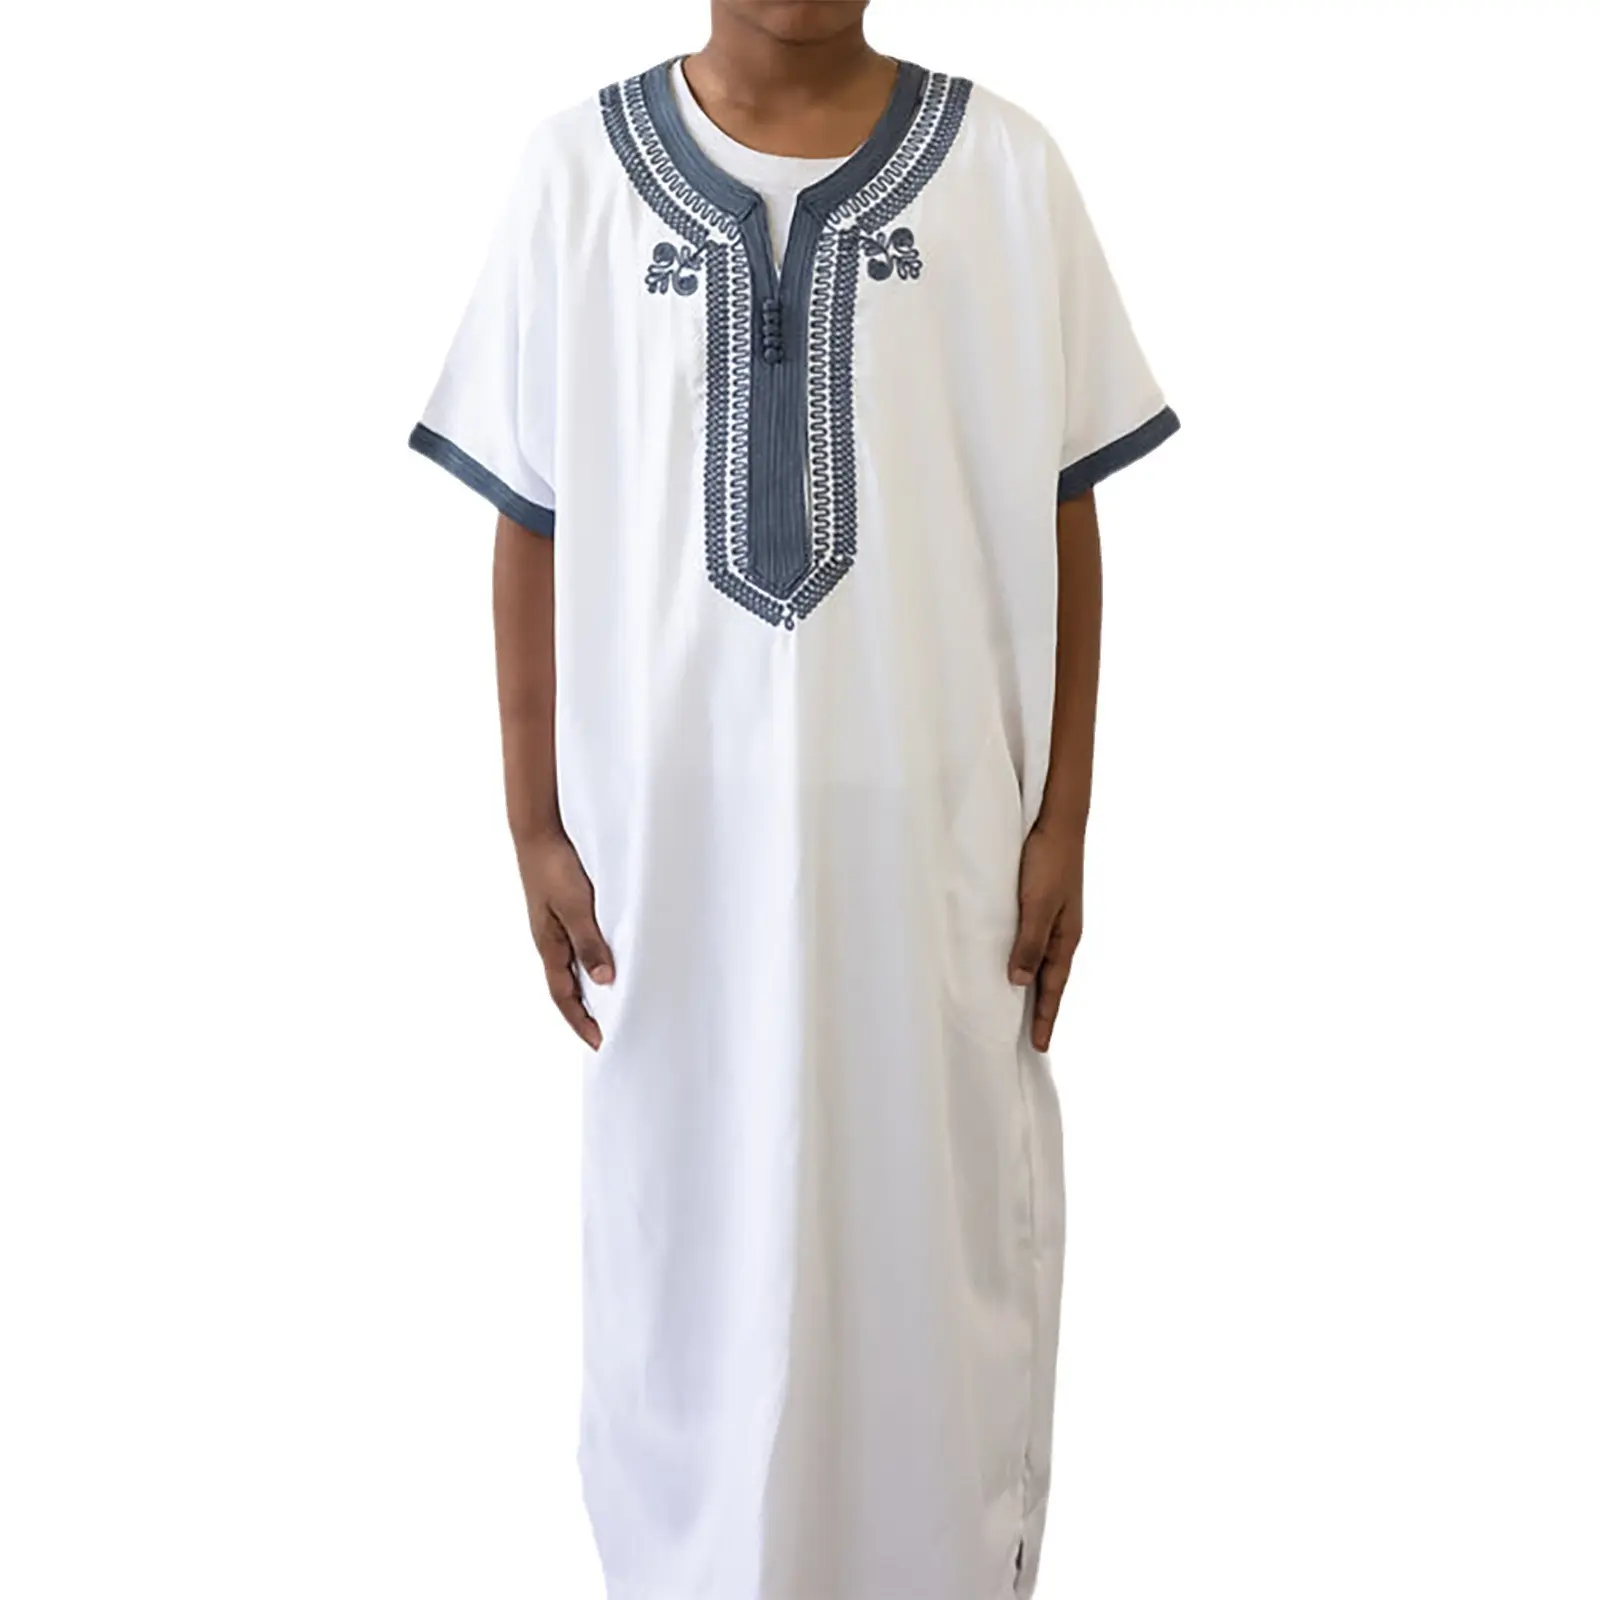 मध्य पूर्व की दुबाई ने इस्लामिक पोशाक में मुस्लिम पुरुष को कपड़े पहने हुए सऊदी अरब राष्ट्र का गाउन जुबा थोब